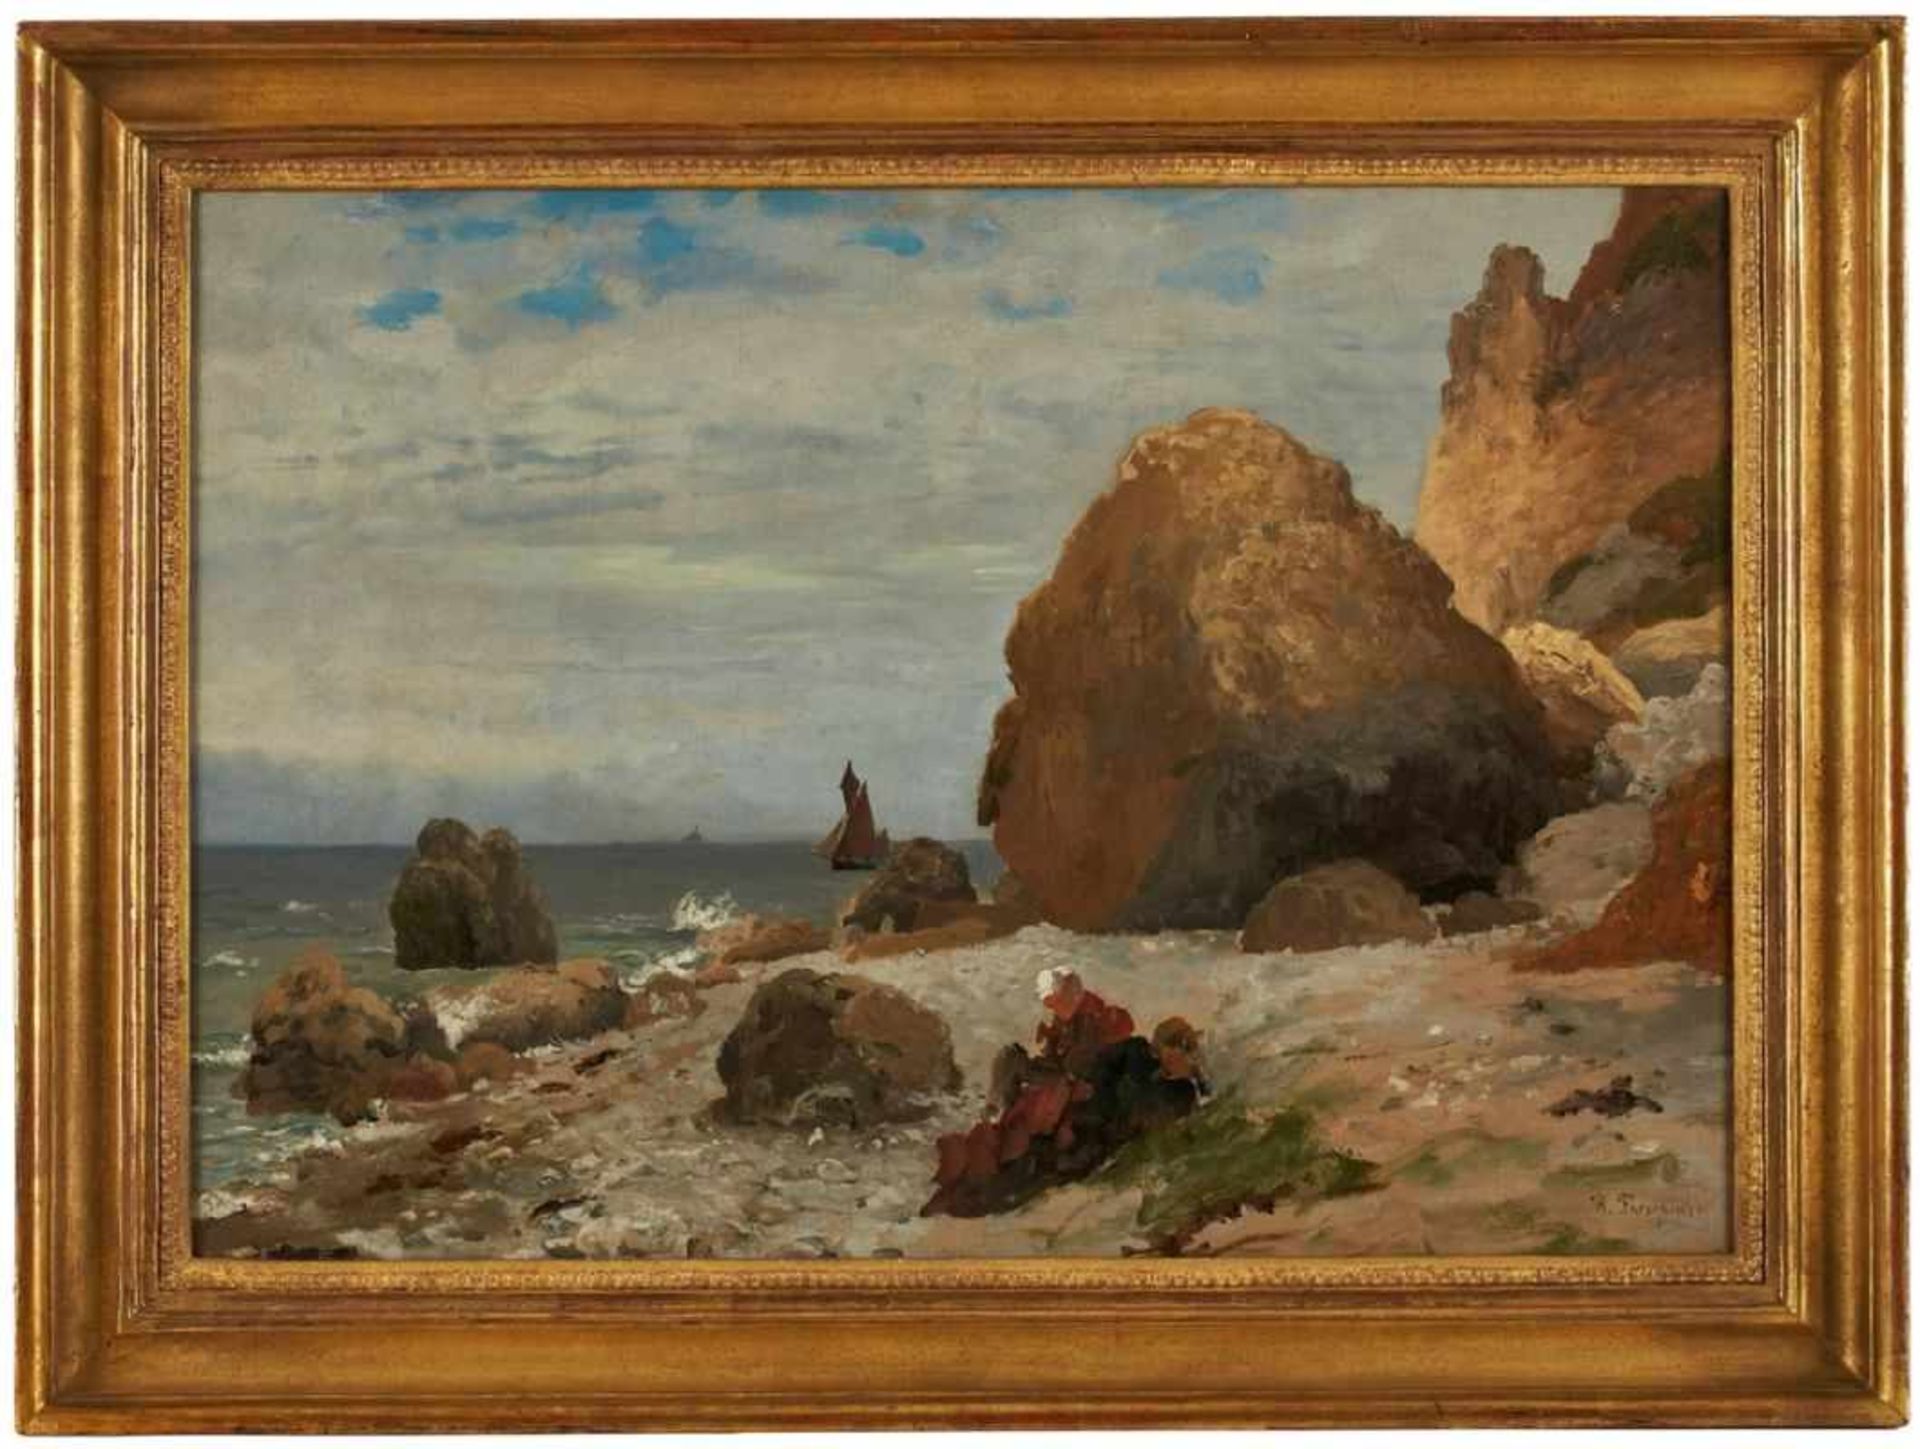 Gemälde Richard Fresenius 1844 Frankfurt - 1903 Monte Carlo Landschaftsmaler. Studium der Malerei am